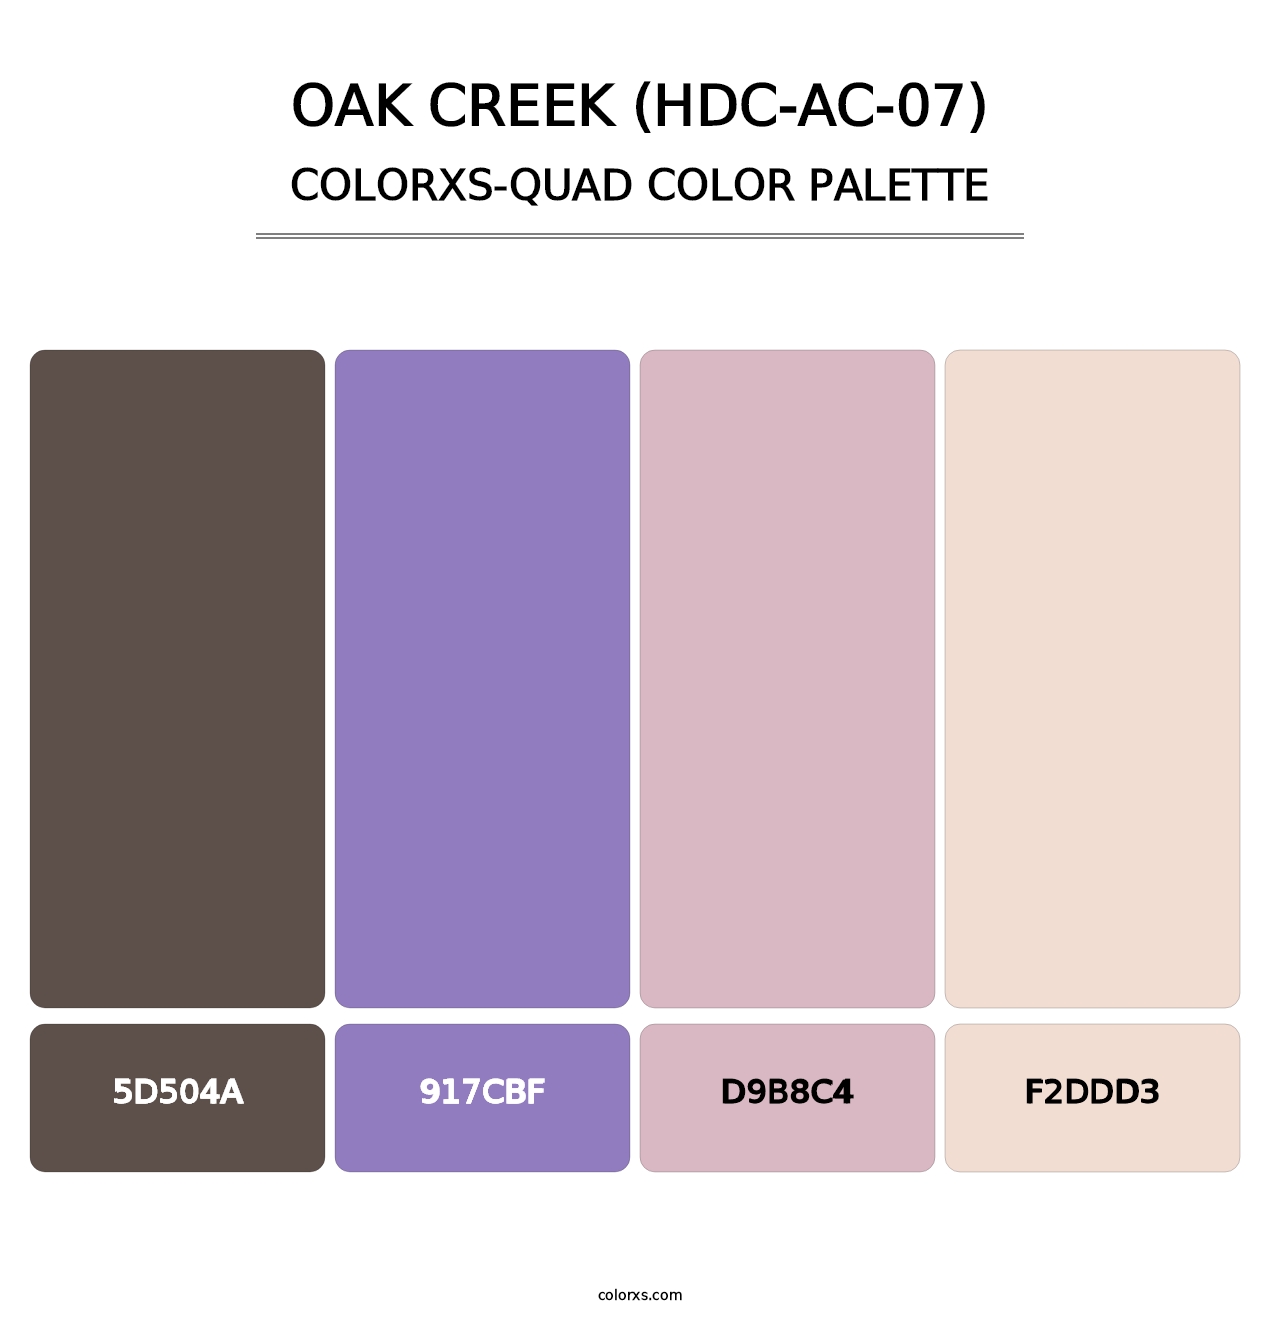 Oak Creek (HDC-AC-07) - Colorxs Quad Palette